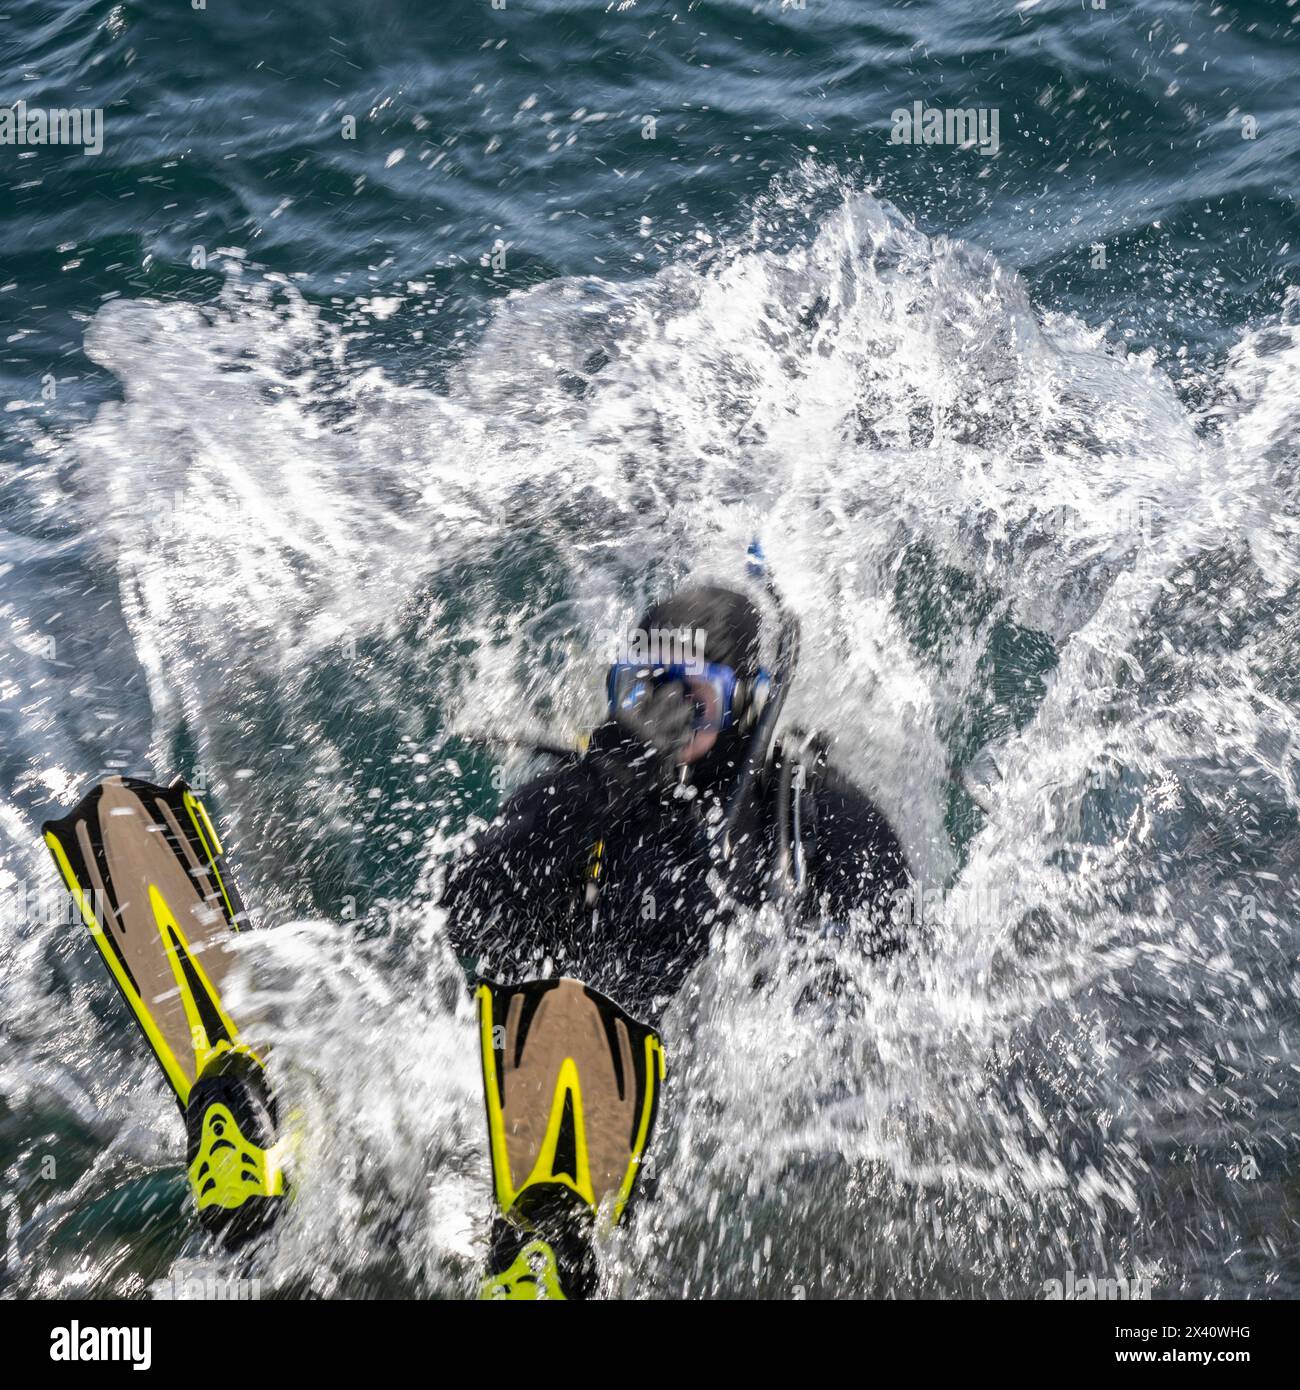 Plongeur en équipement de plongée complet plonge en arrière dans l'eau avec un grand éclaboussure. Ogden point est une installation portuaire en eau profonde située dans le sud-ouest... Banque D'Images